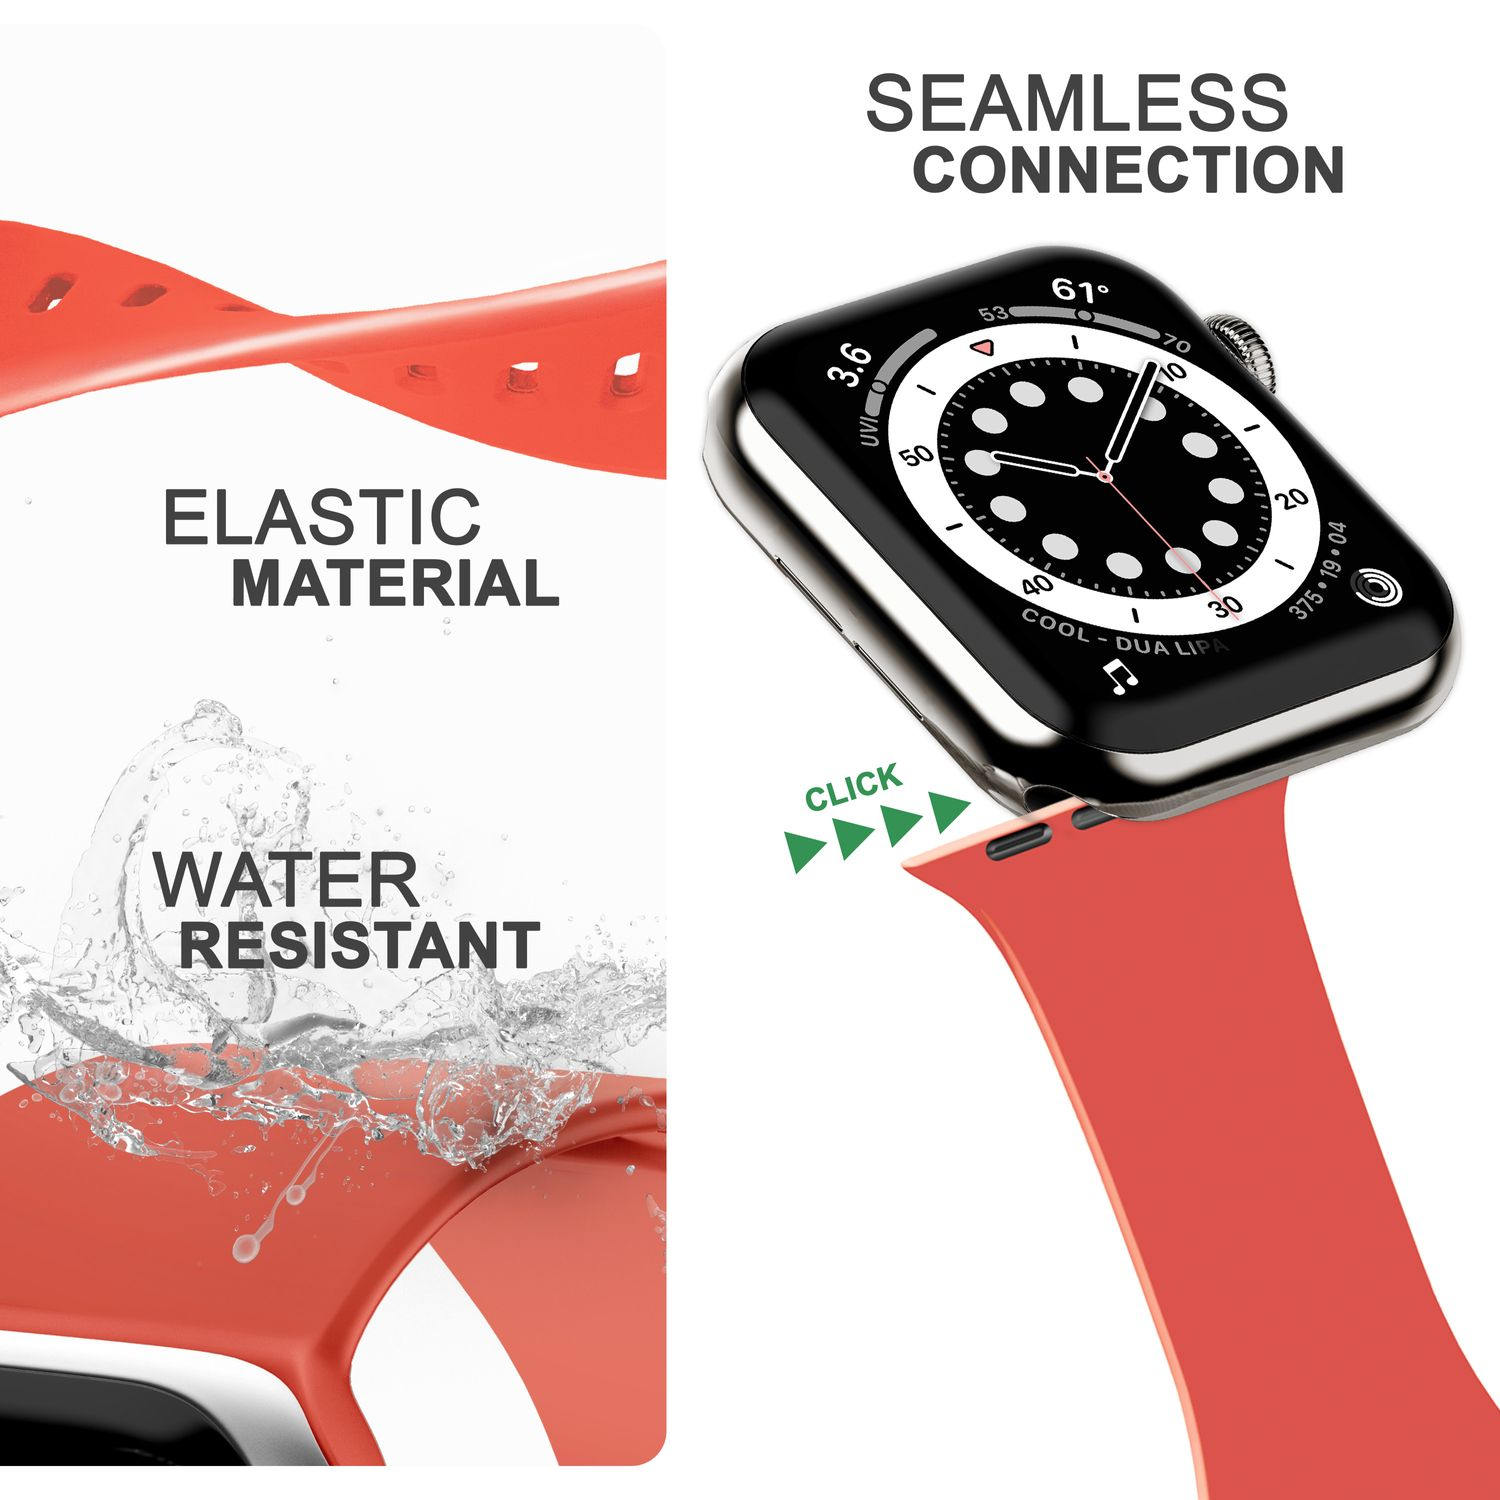 NALIA Watch Apple Ersatzarmband, Apple, Silikon Rot Pastell Armband, Smartwatch 42mm/44mm/45mm/49mm,